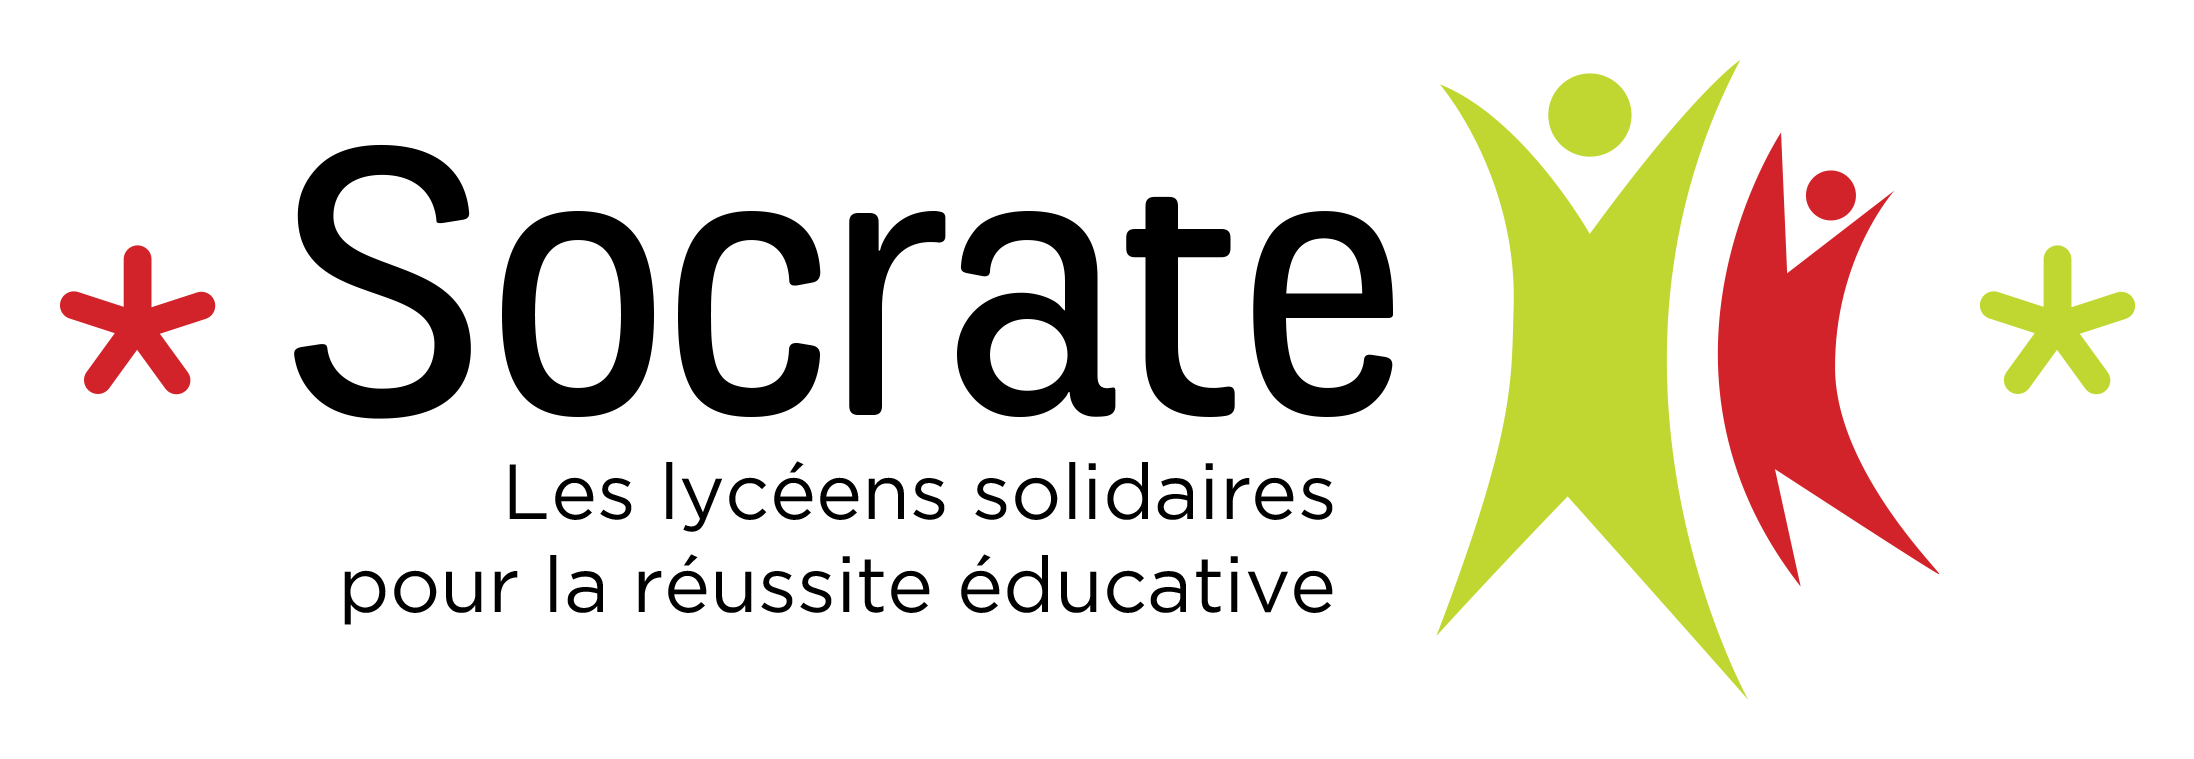 Un nouveau logo pour Socrate !